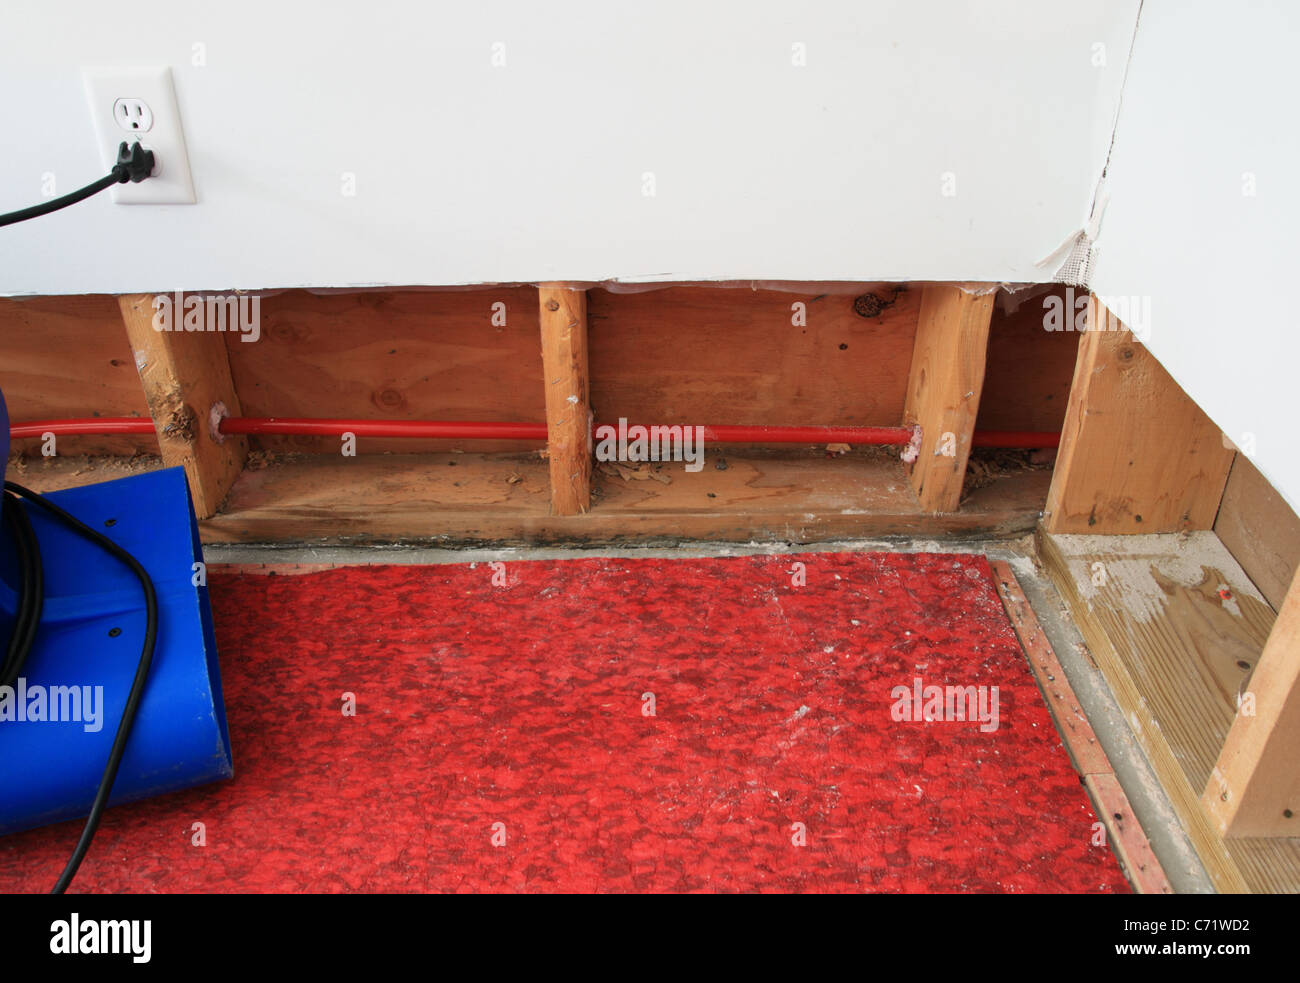 ein Industriegebläse trocknen Wasser beschädigt, Wand und Teppich die  Polsterung besteht aus einem Wohn-Keller Stockfotografie - Alamy